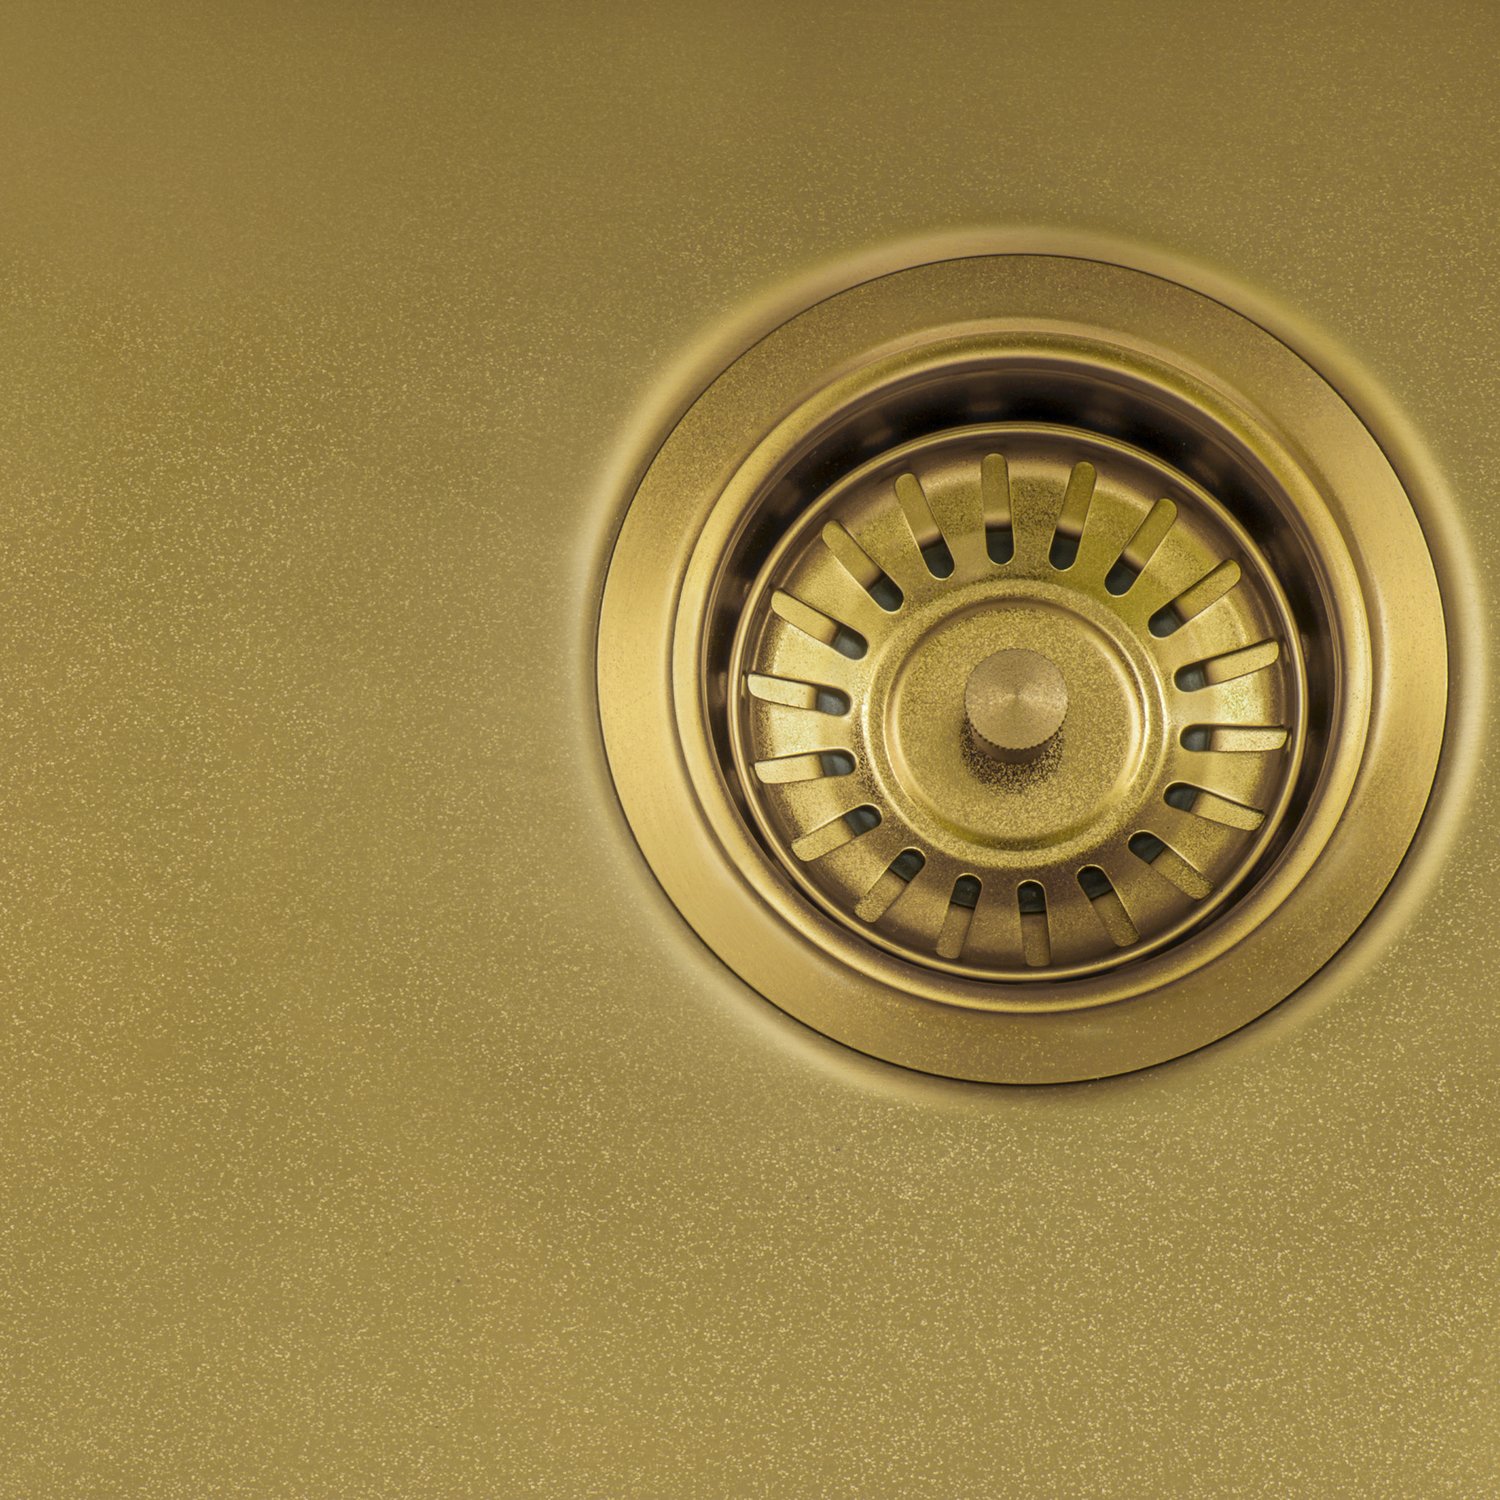 35 kitchen sink Ruvati Kitchen Sink Brass Tone Matte Gold